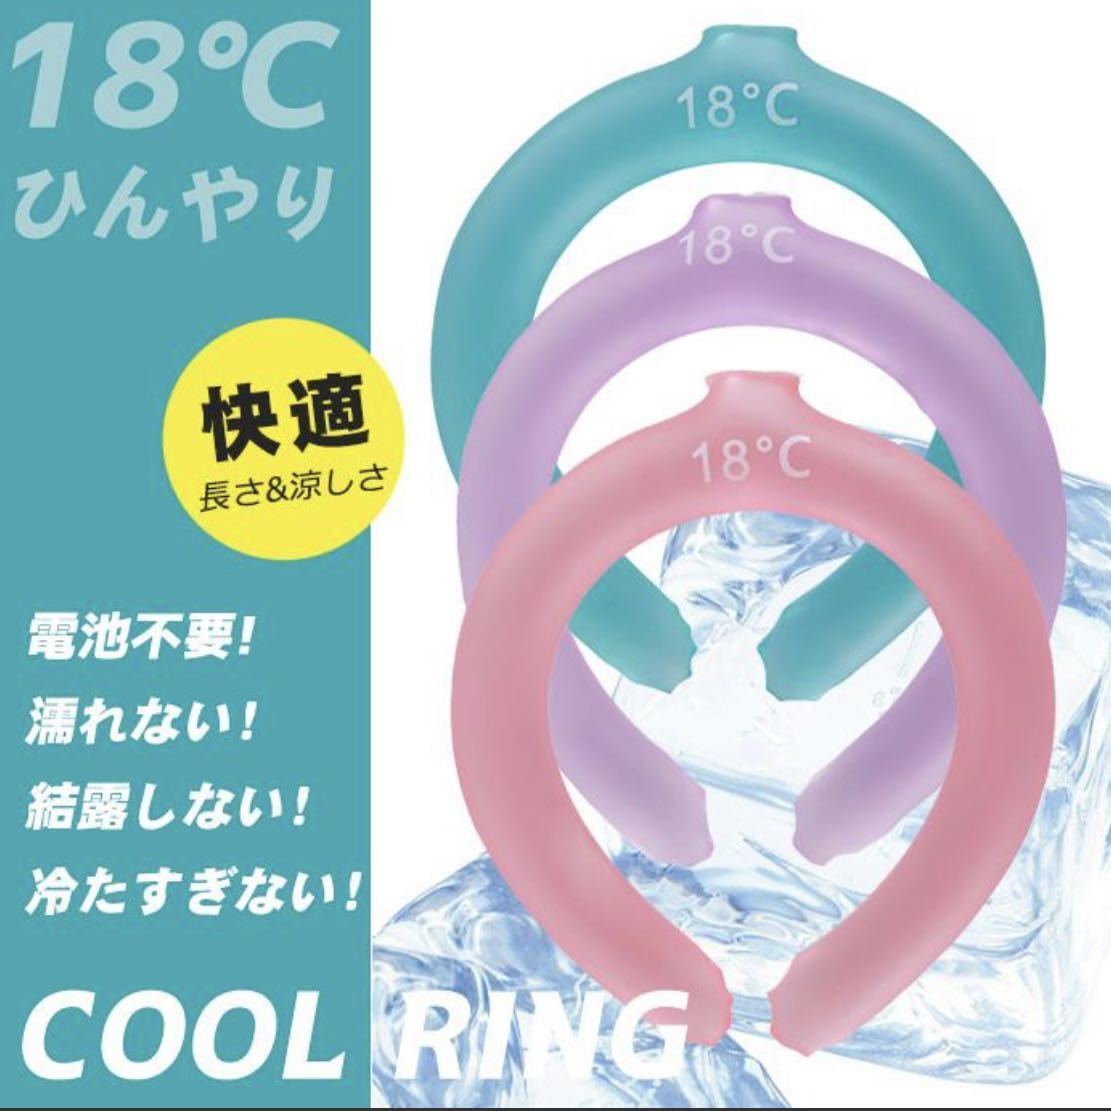 [ бесплатная доставка ] лиловый охладитель для шеи 8*C лёд упаковка прохладный кольцо .... лёд шея кольцо . средний . предотвращение отдых спорт тепловая защита 